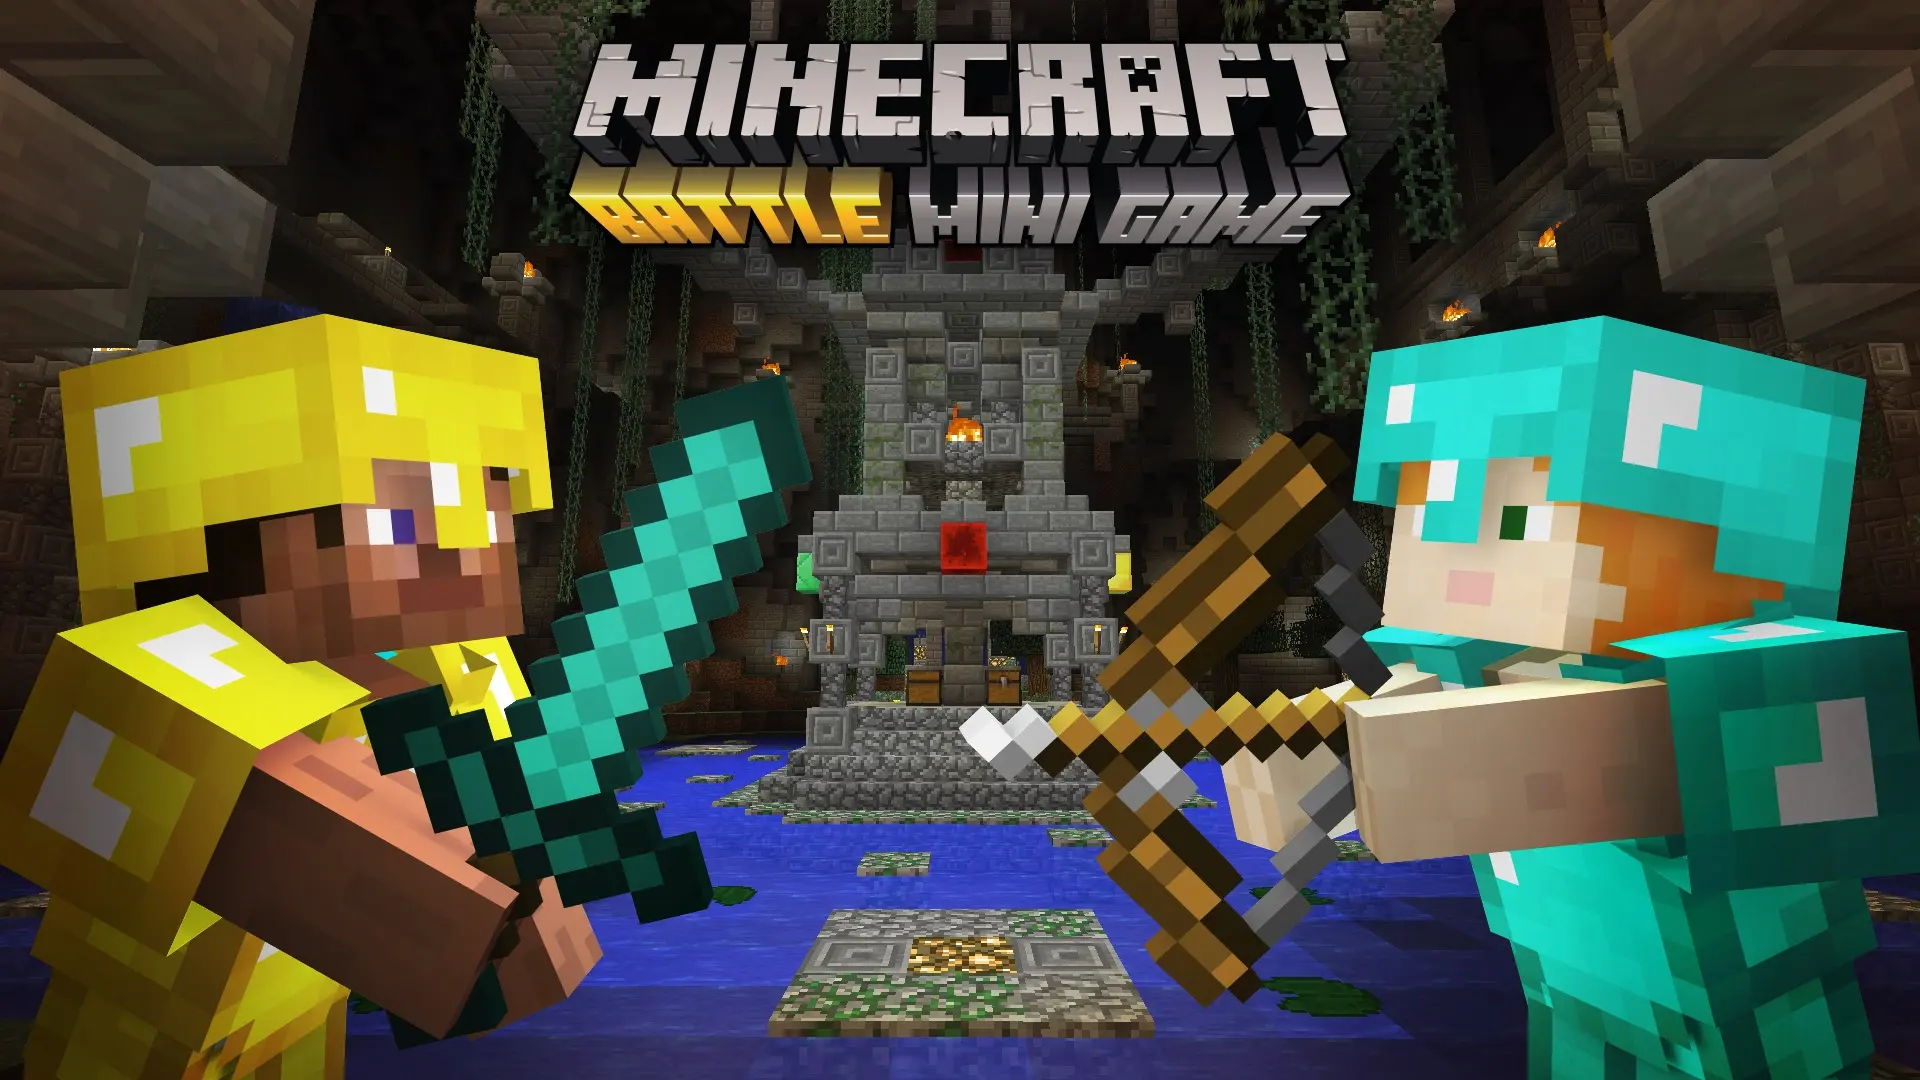 juegos de minecraft mini minecraft - Cómo se llama el minijuego de Minecraft